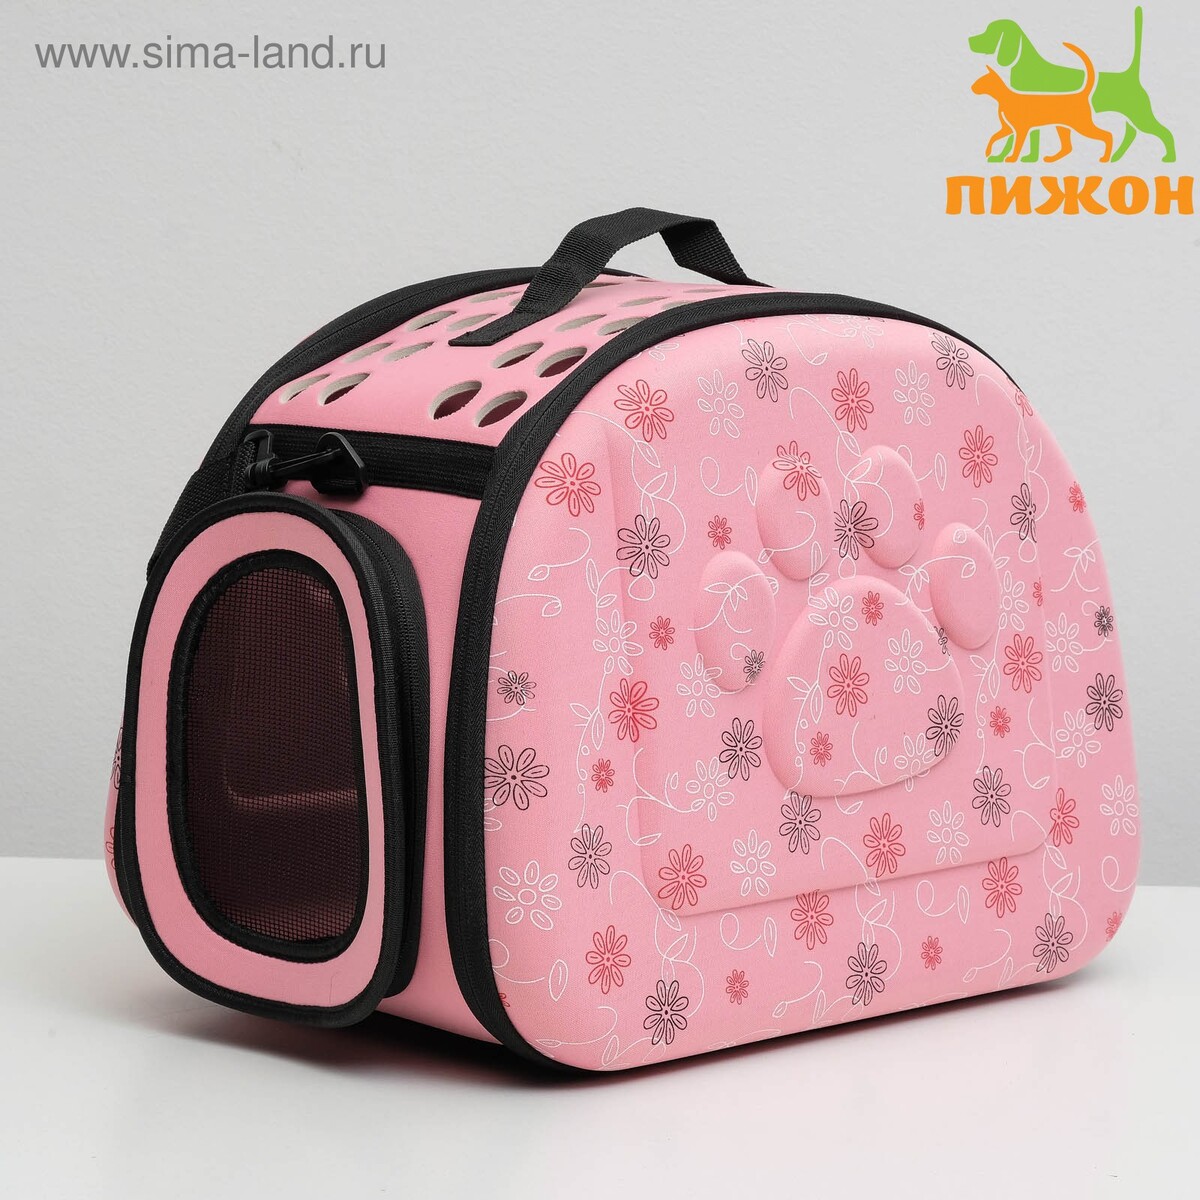 Складная сумка-переноска с отдельным входом, материал eva, 43,5 х 28 х 33 см, розовая слинг переноска для животных 45 х 11 х 24 см бело розовая